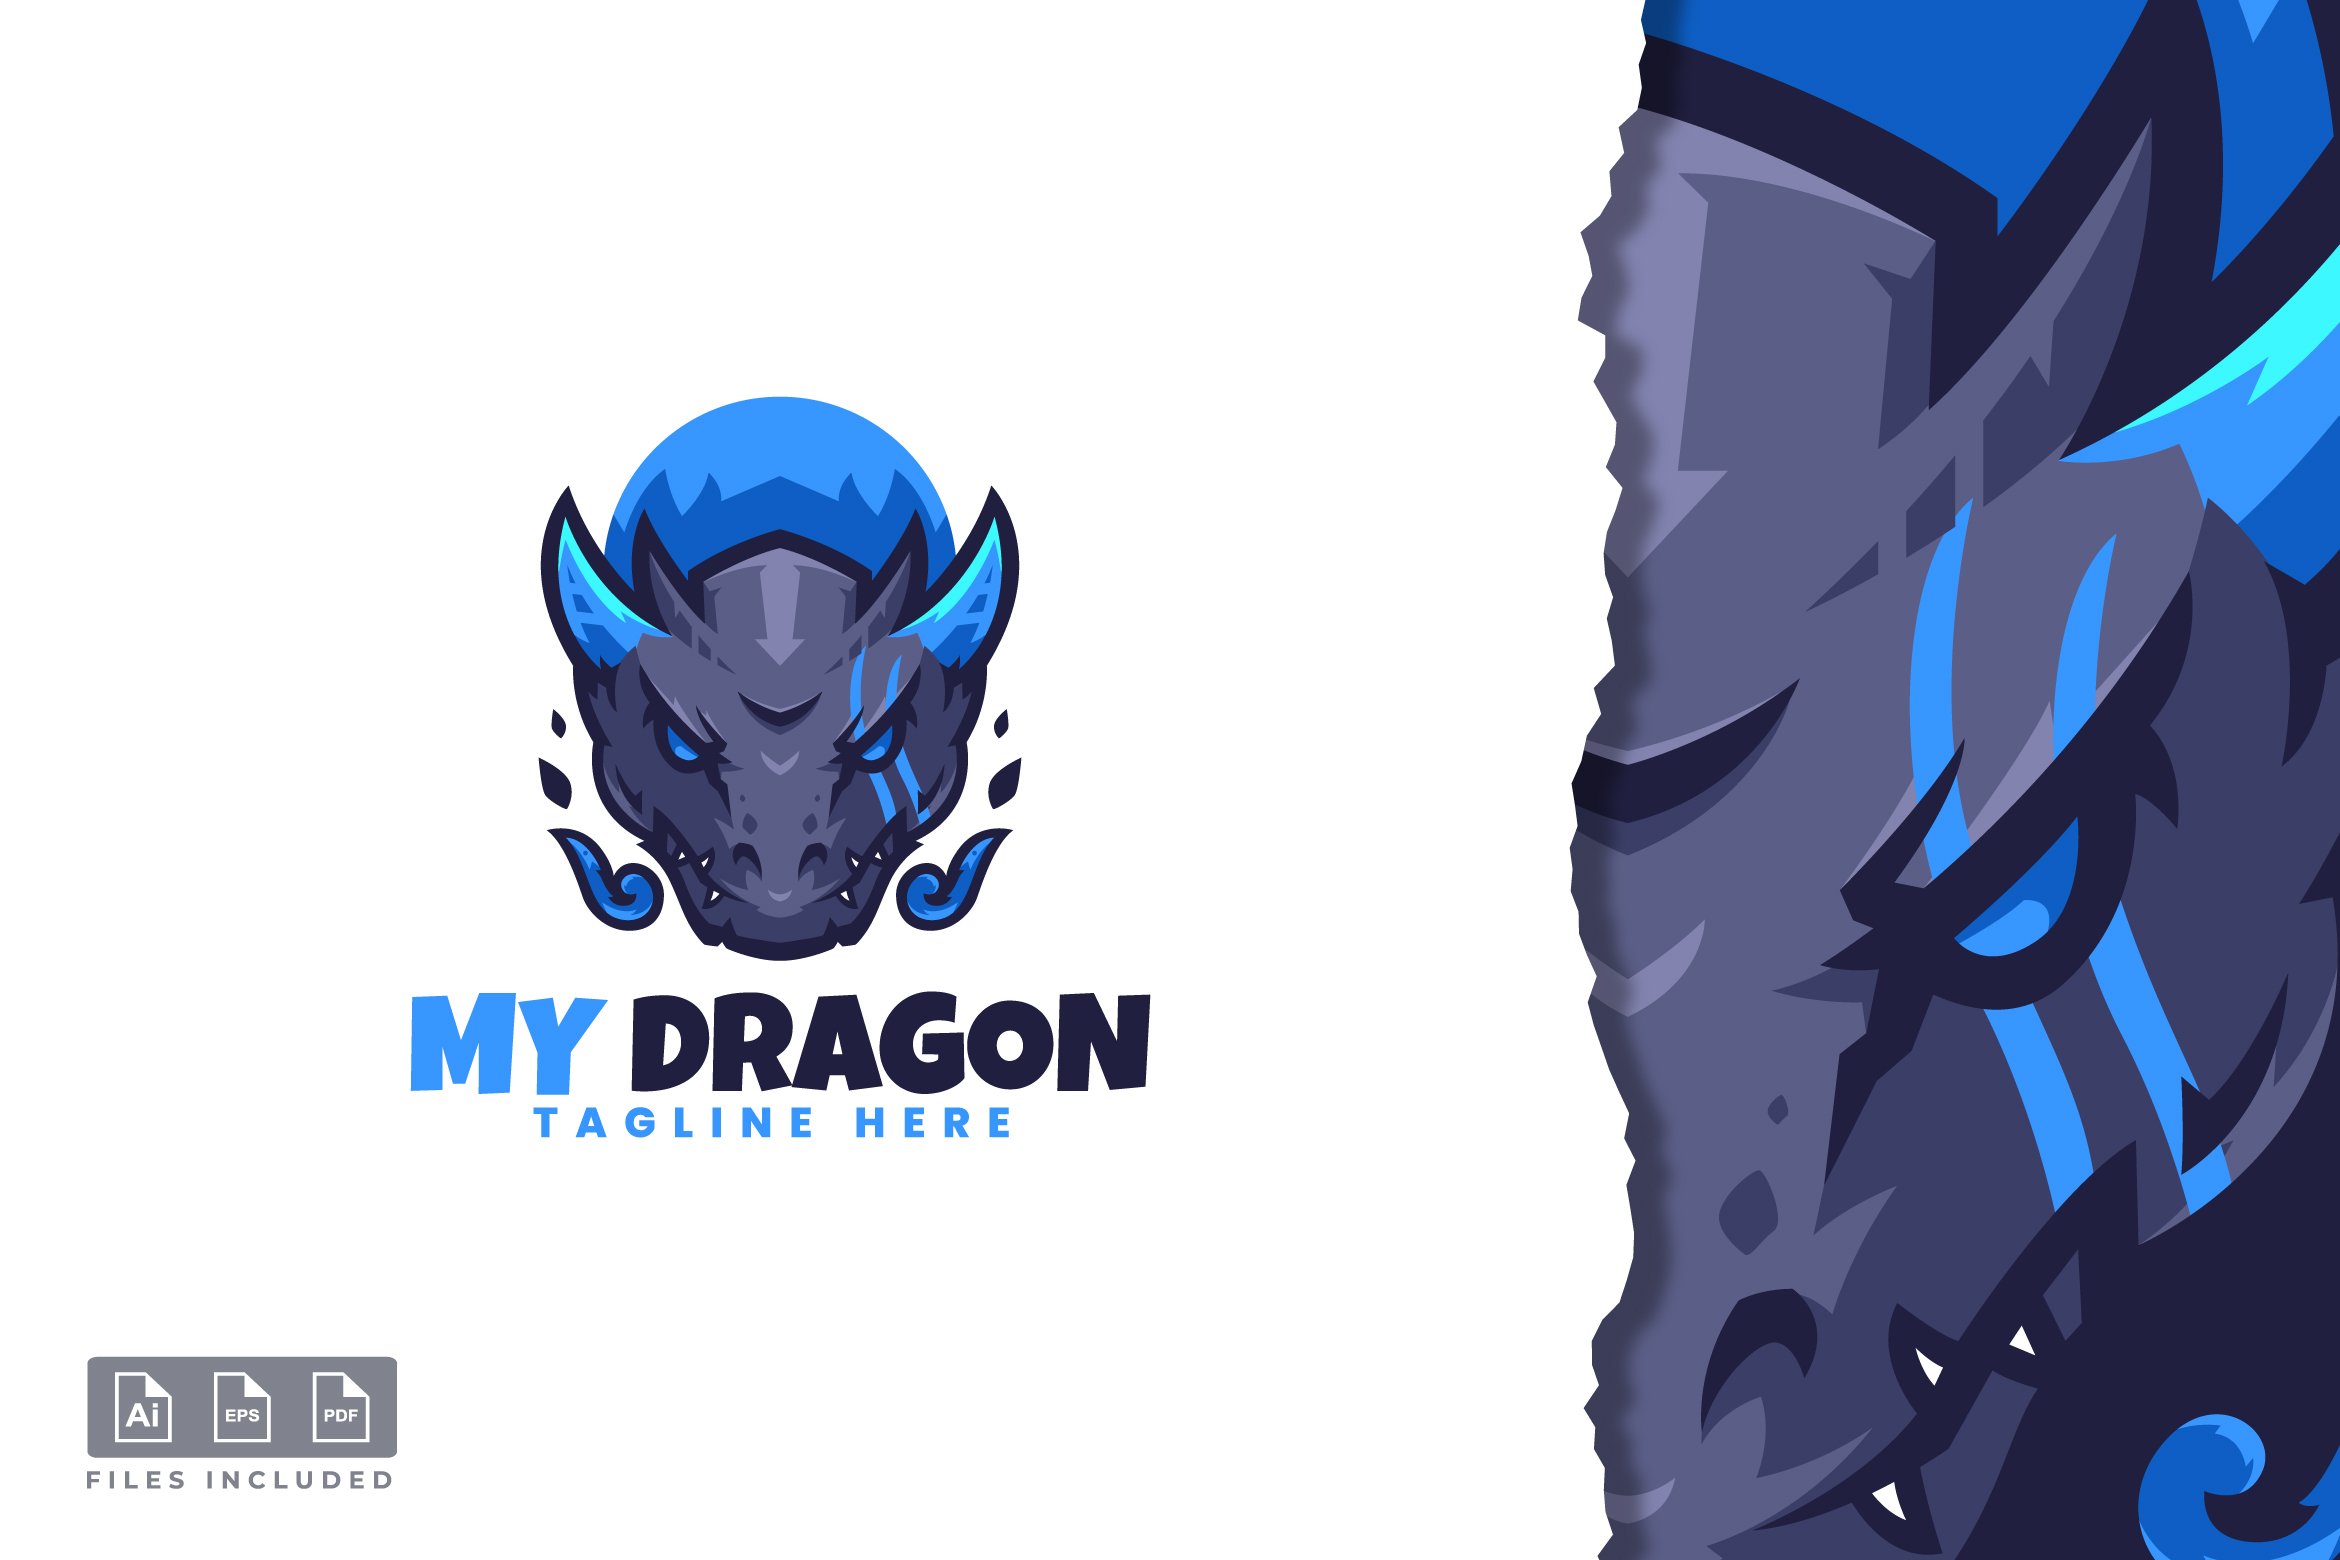 Dragon - Mascot & E-sport Logo cover image.